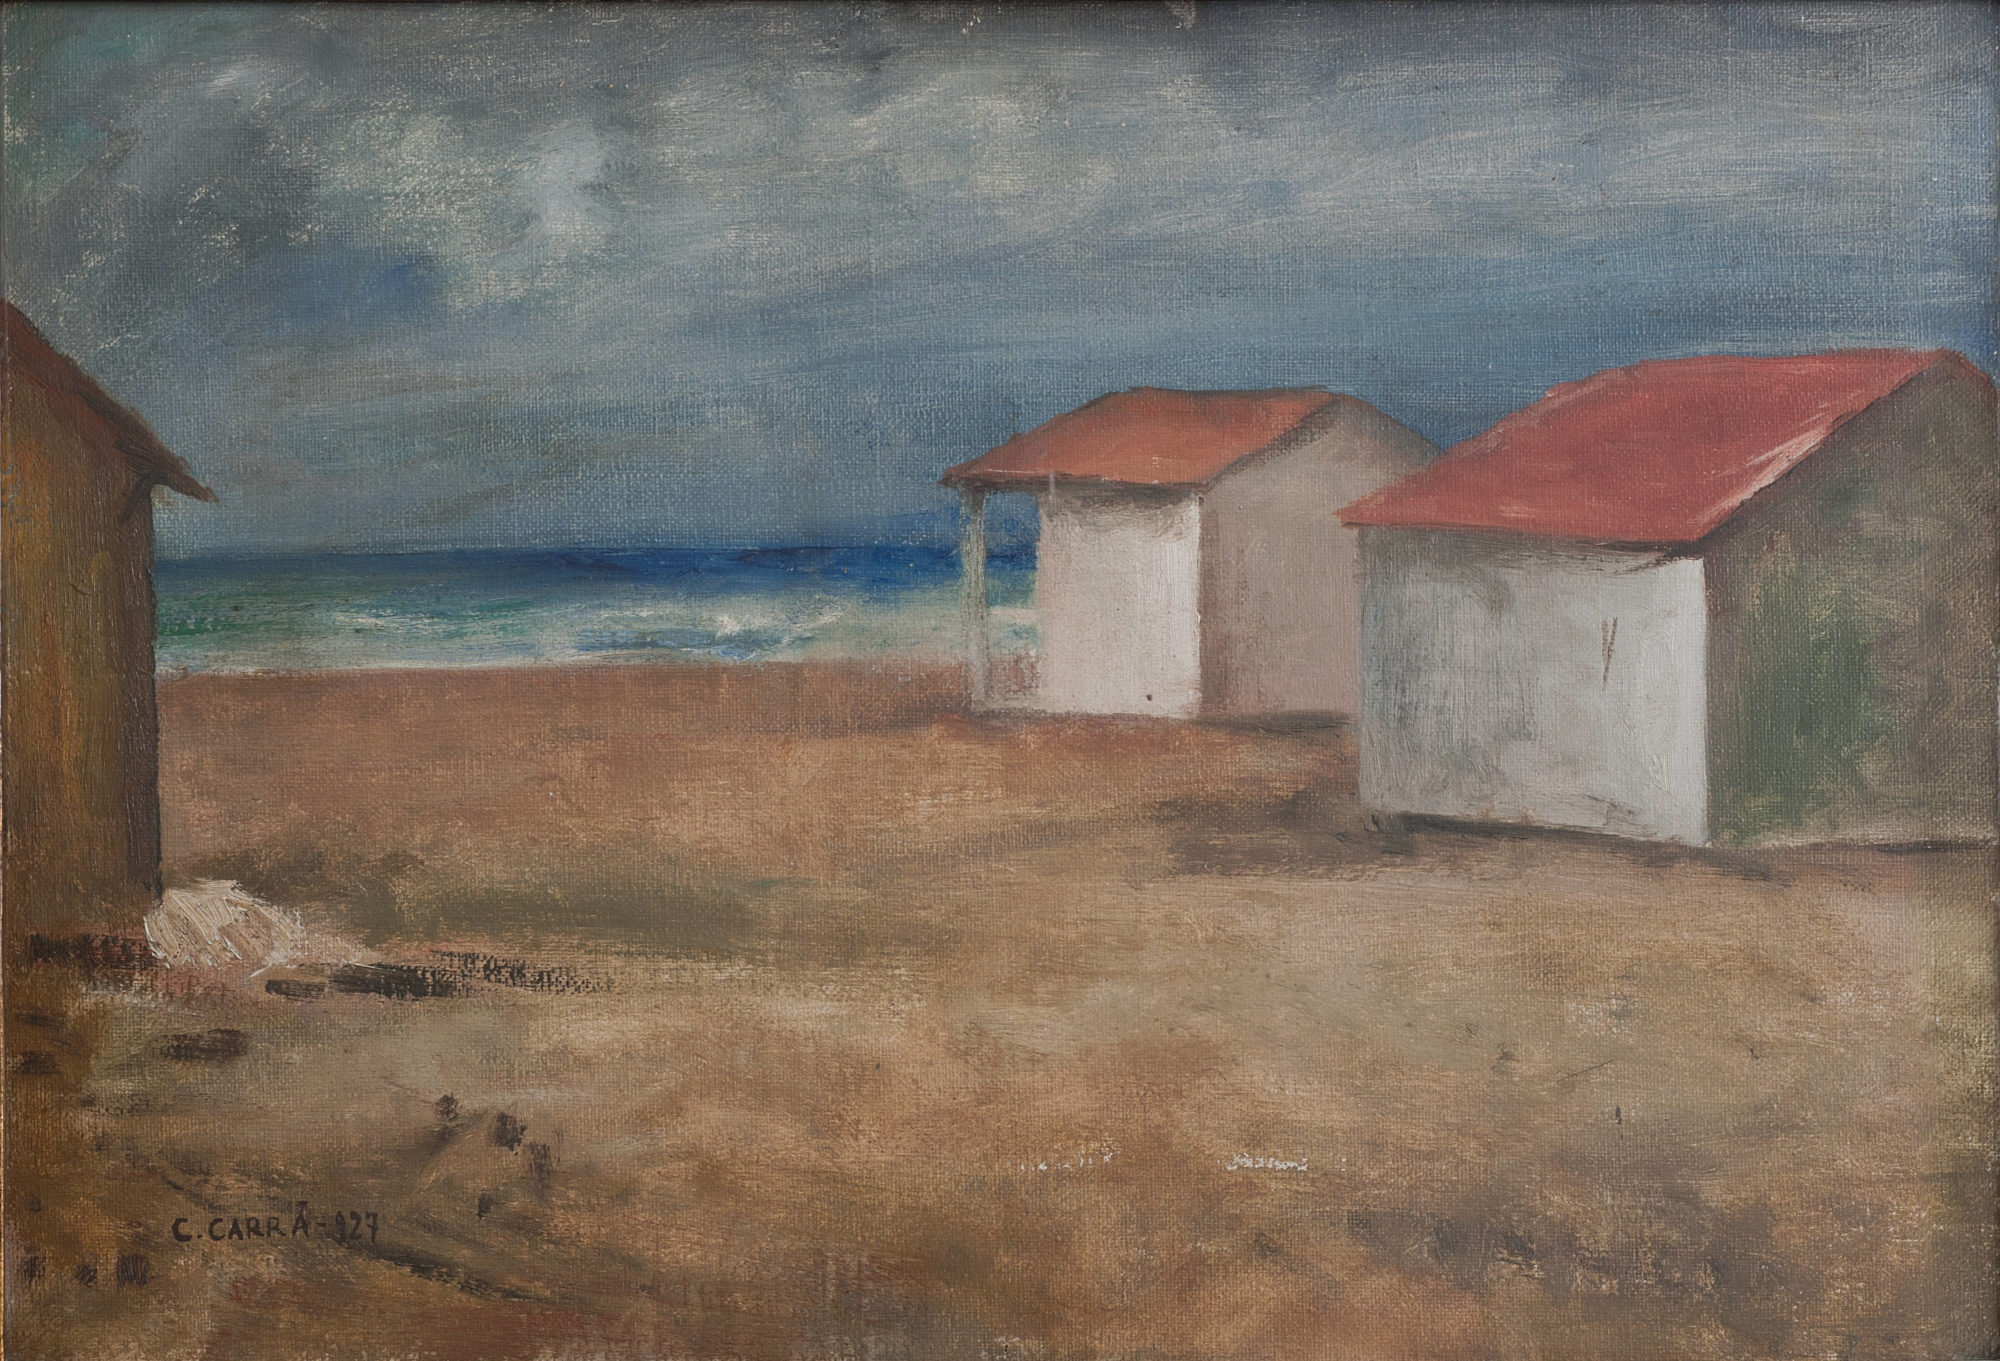 Carlo Carrà, Capanni sul mare (1927; olio su tela applicata su cartone, 44 x 63 cm; Torino, GAM - Galleria Civica d'Arte Moderna e Contemporanea)
 